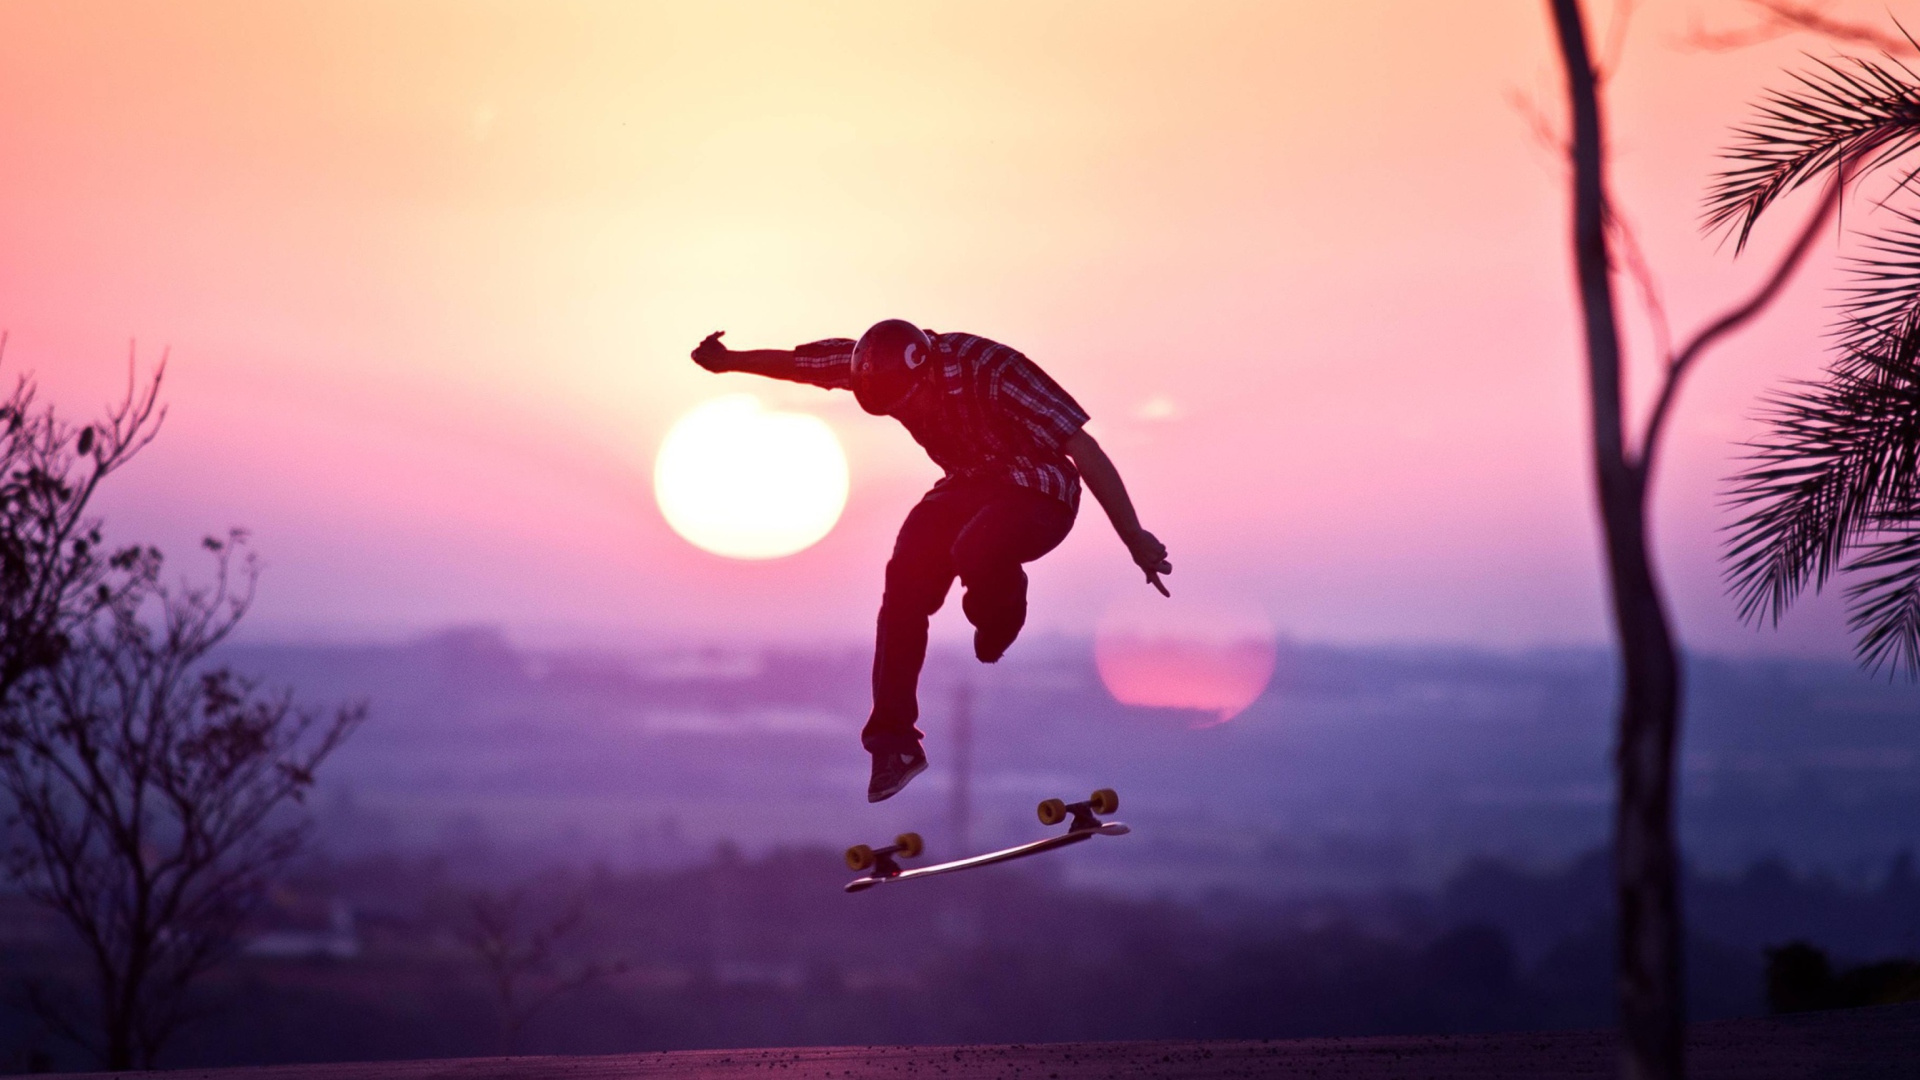 Sunset Skateboard Jump wallpaper 1920x1080